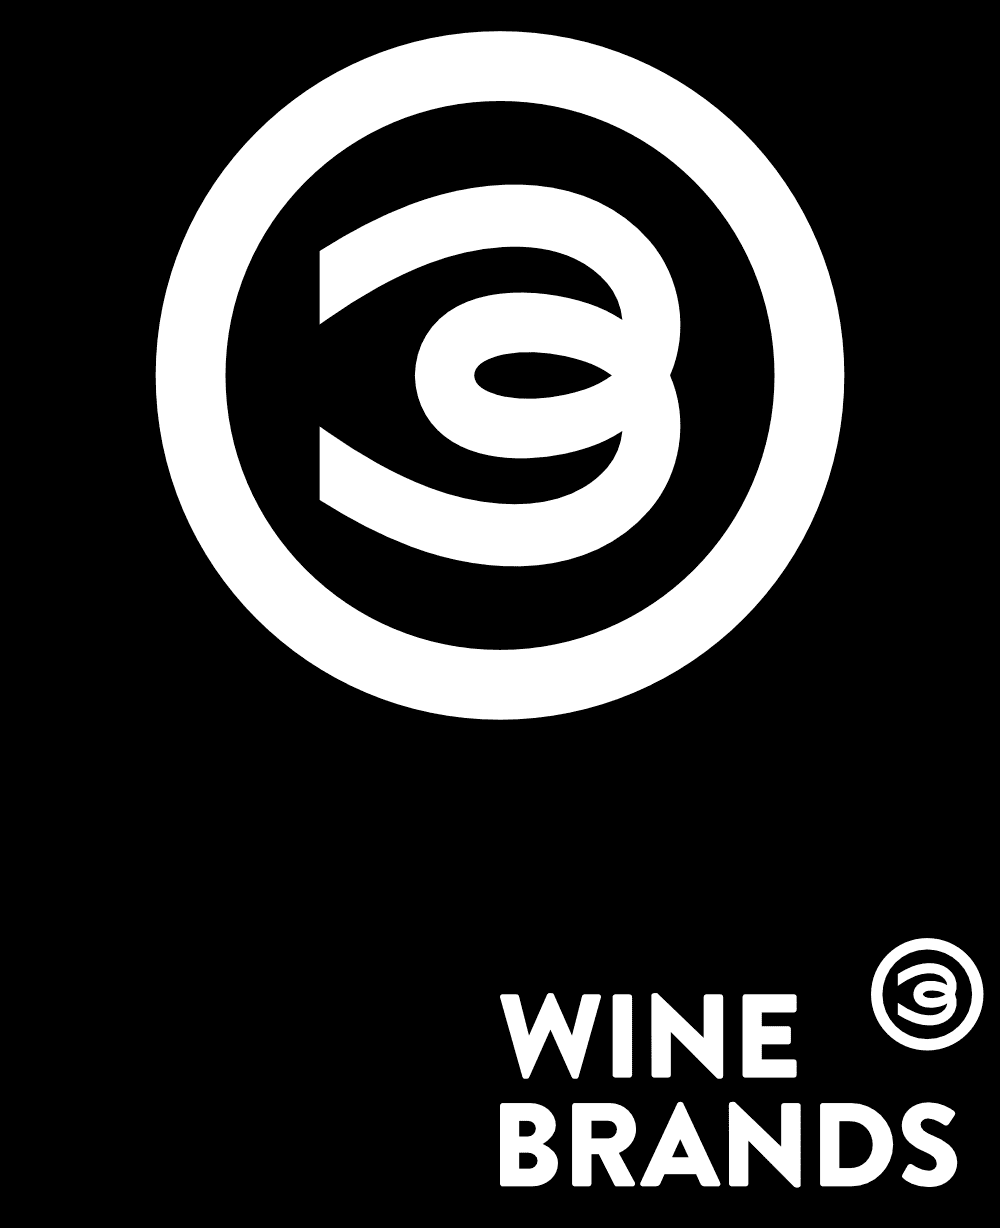 Símbolo e marca Wine Brands | Design de marca e identidade visual assinada pela Brandium